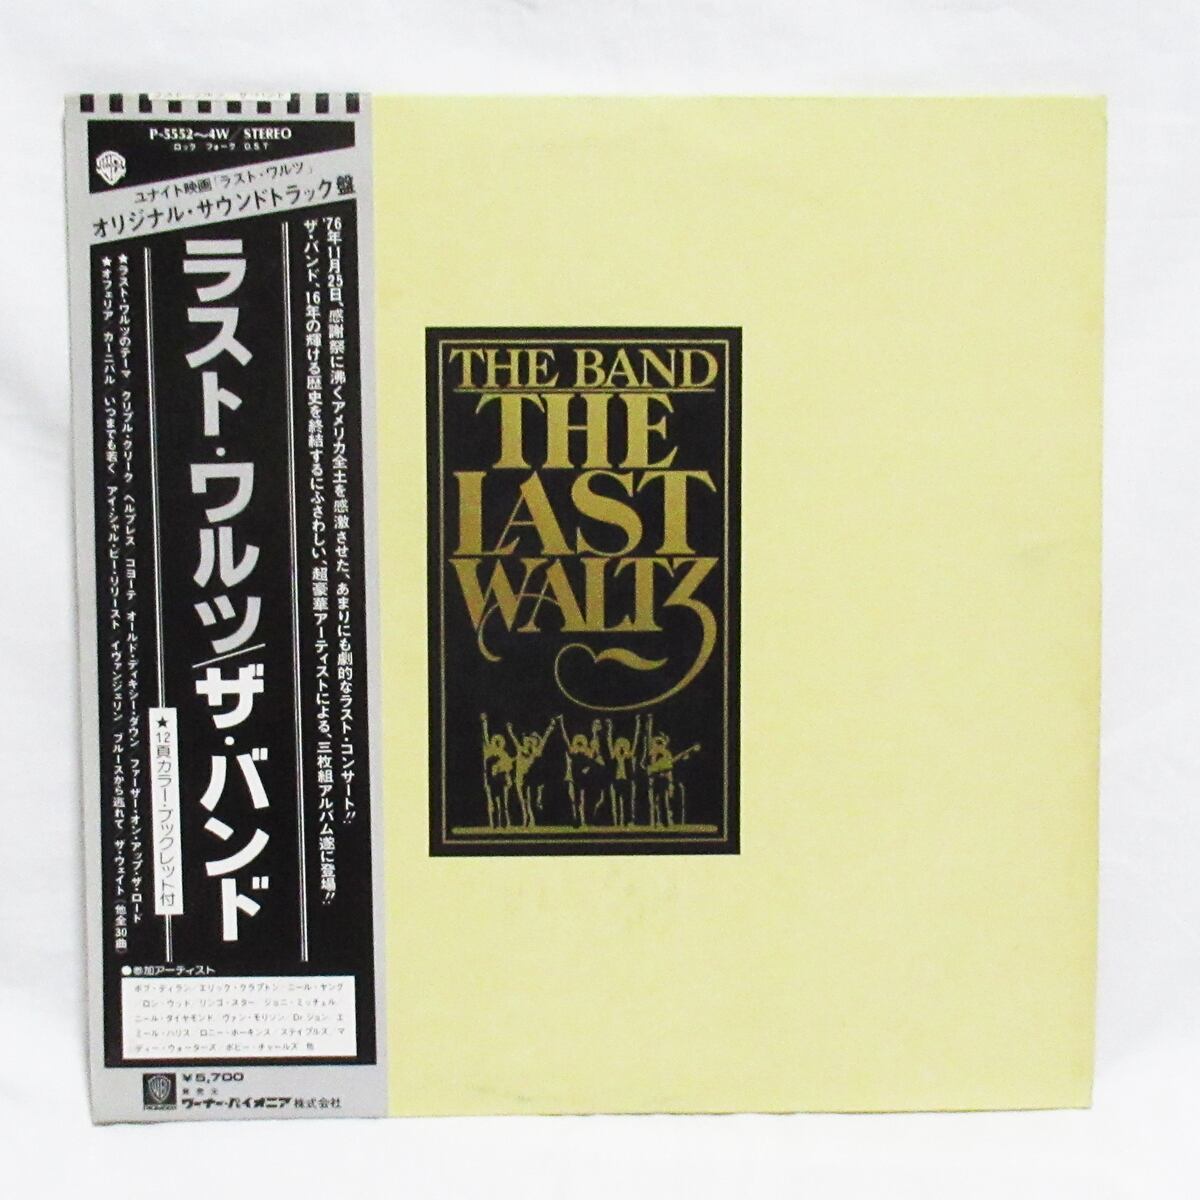 ザ・バンド THE BAND ラスト・ワルツ【LP / 帯、ブックレット付